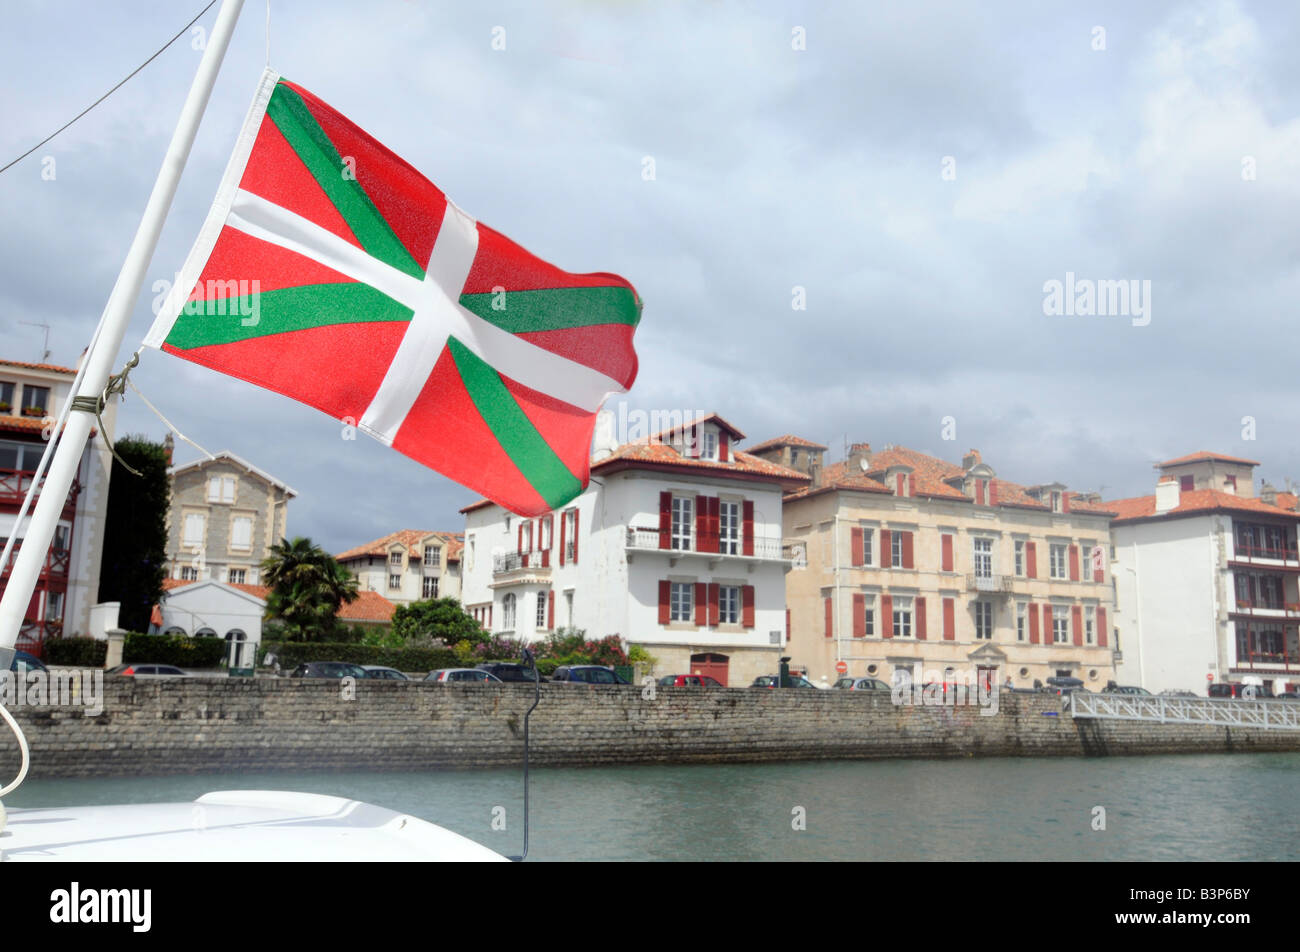 Una bandera vasca desde el mástil de un barco en el puerto de St Jean de Luz, una pequeña ciudad en el País Vasco, al suroeste de Francia Foto de stock